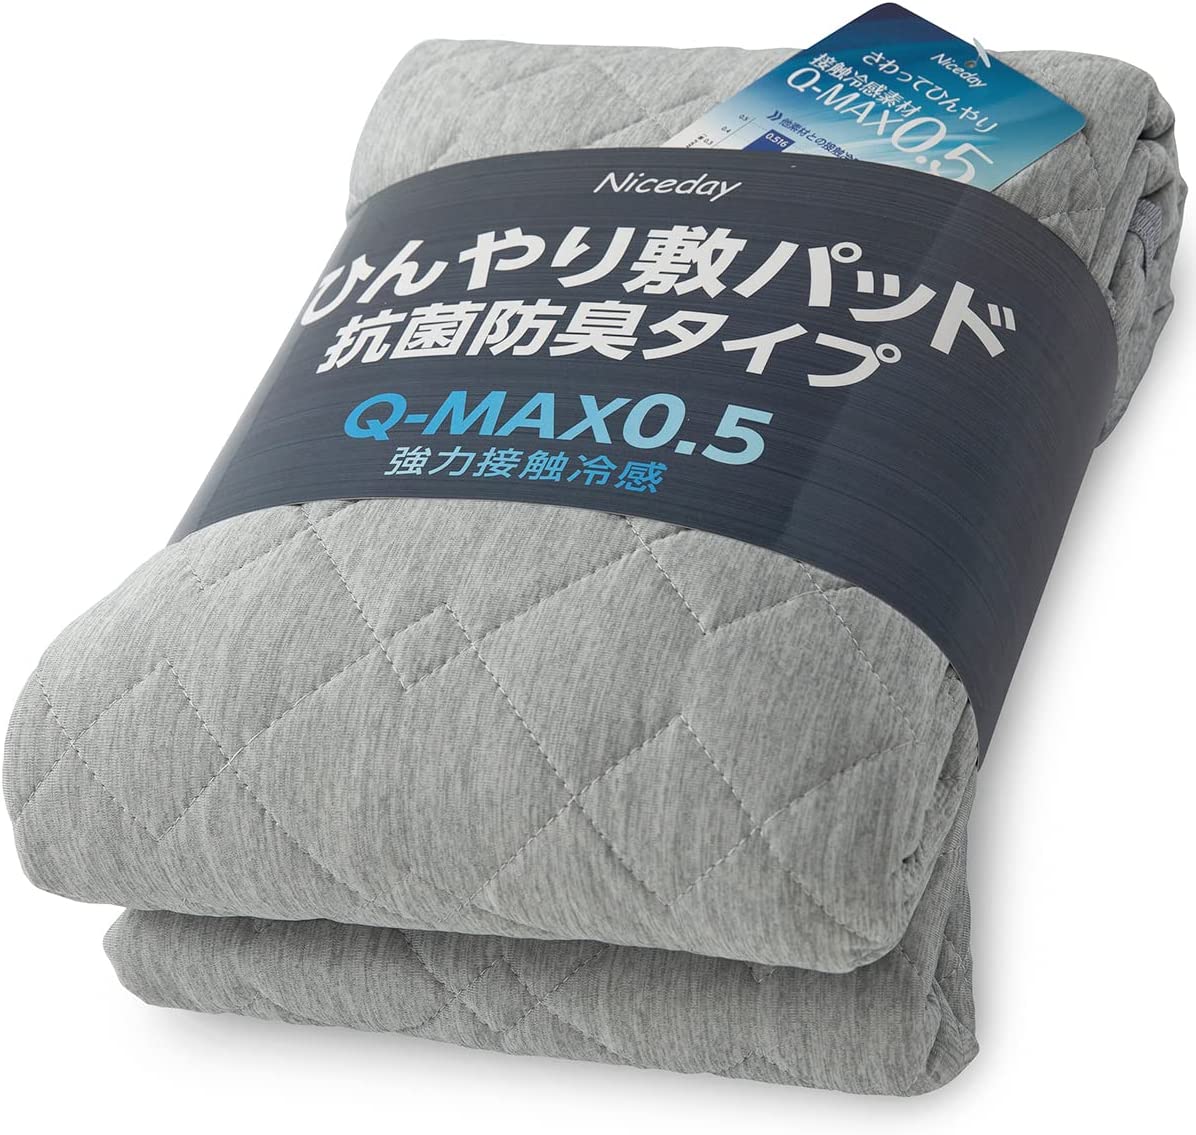 【日本代購】Niceday 涼爽 床墊 觸感清涼 Q-max0.542 可洗 褥墊 抗菌 防臭 雙面可用 灰色